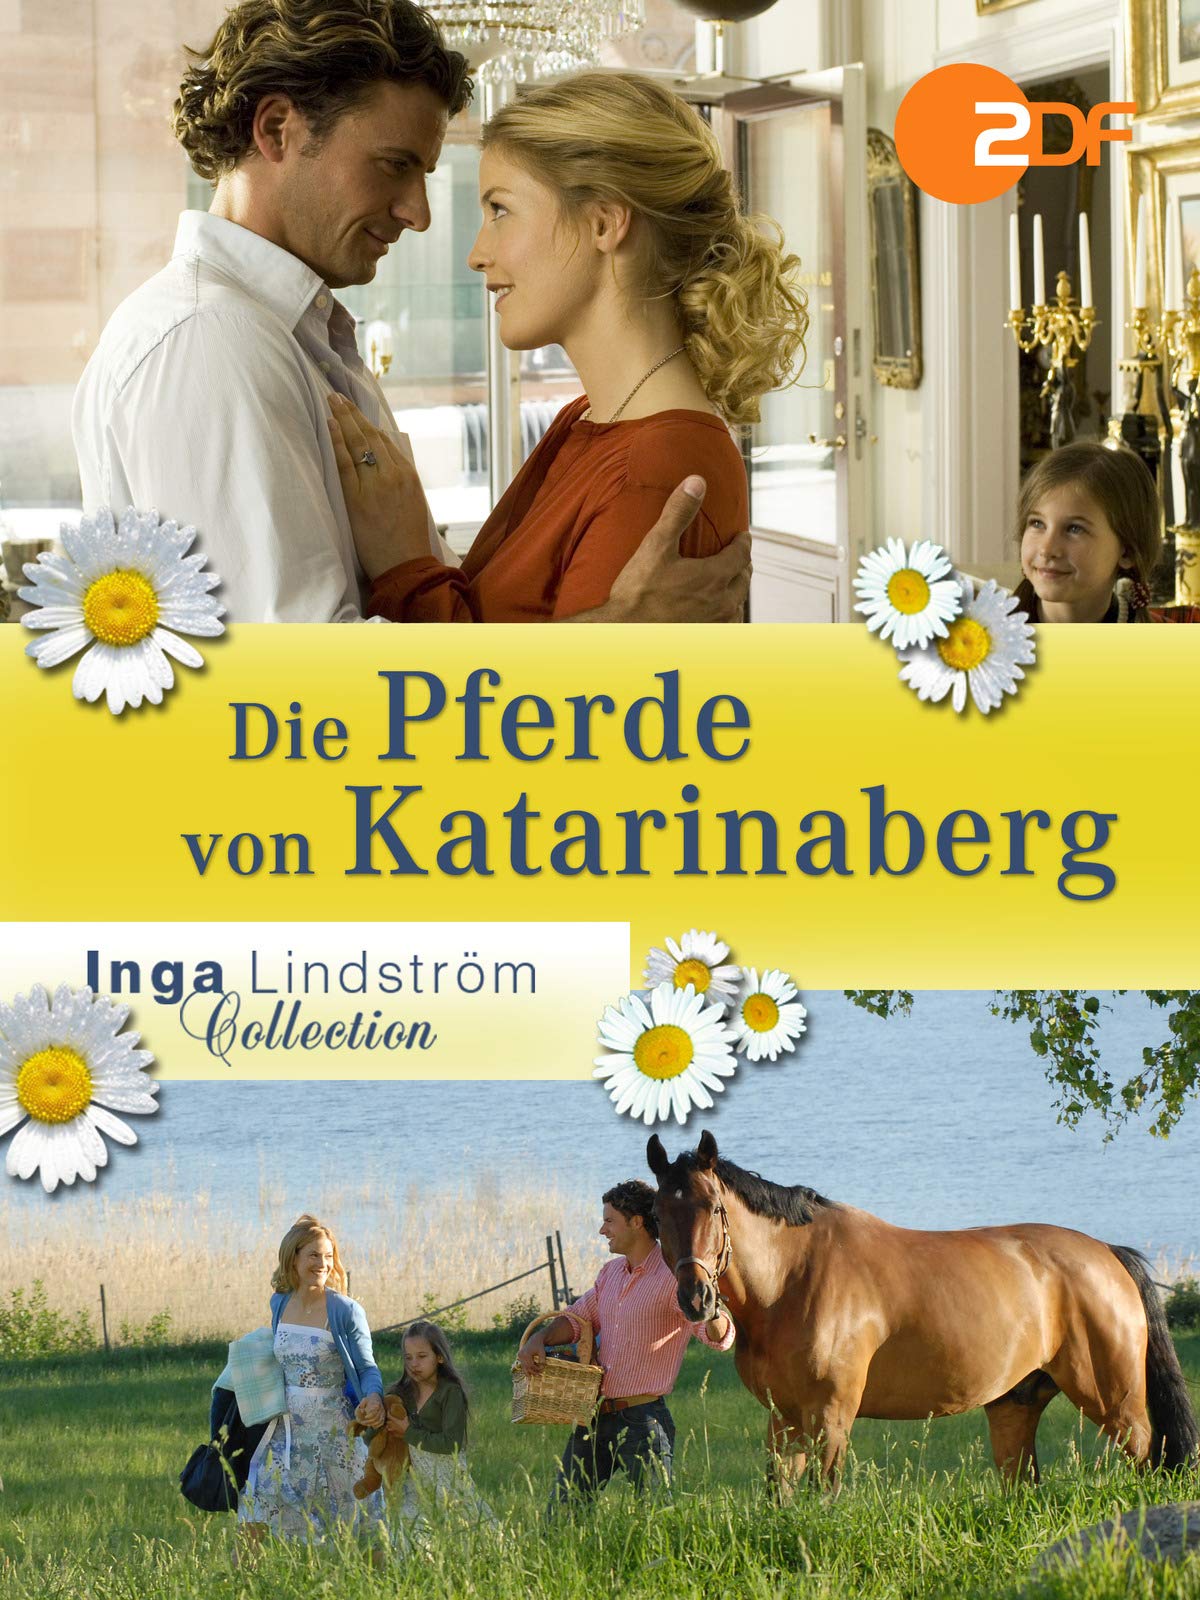 Los caballos de Katarinaberg